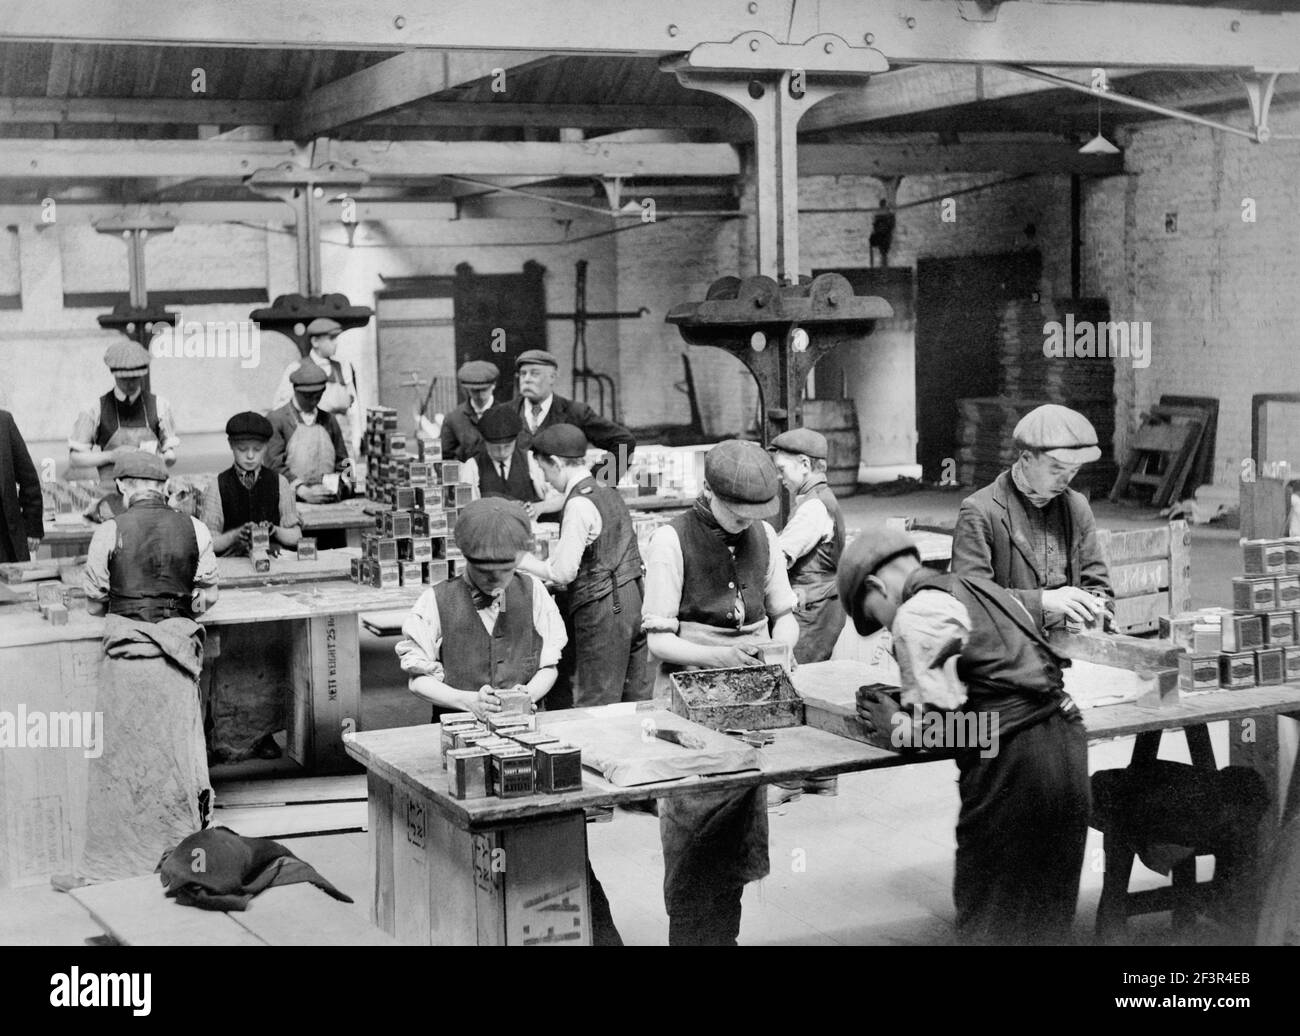 BUTLER's WHARF, Shad Thames, London. Ab 1921 mussten die Kinder mindestens 12 Jahre alt sein, bevor sie Vollzeit arbeiten konnten, obwohl einige dieser Jungen nicht mehr da waren Stockfoto